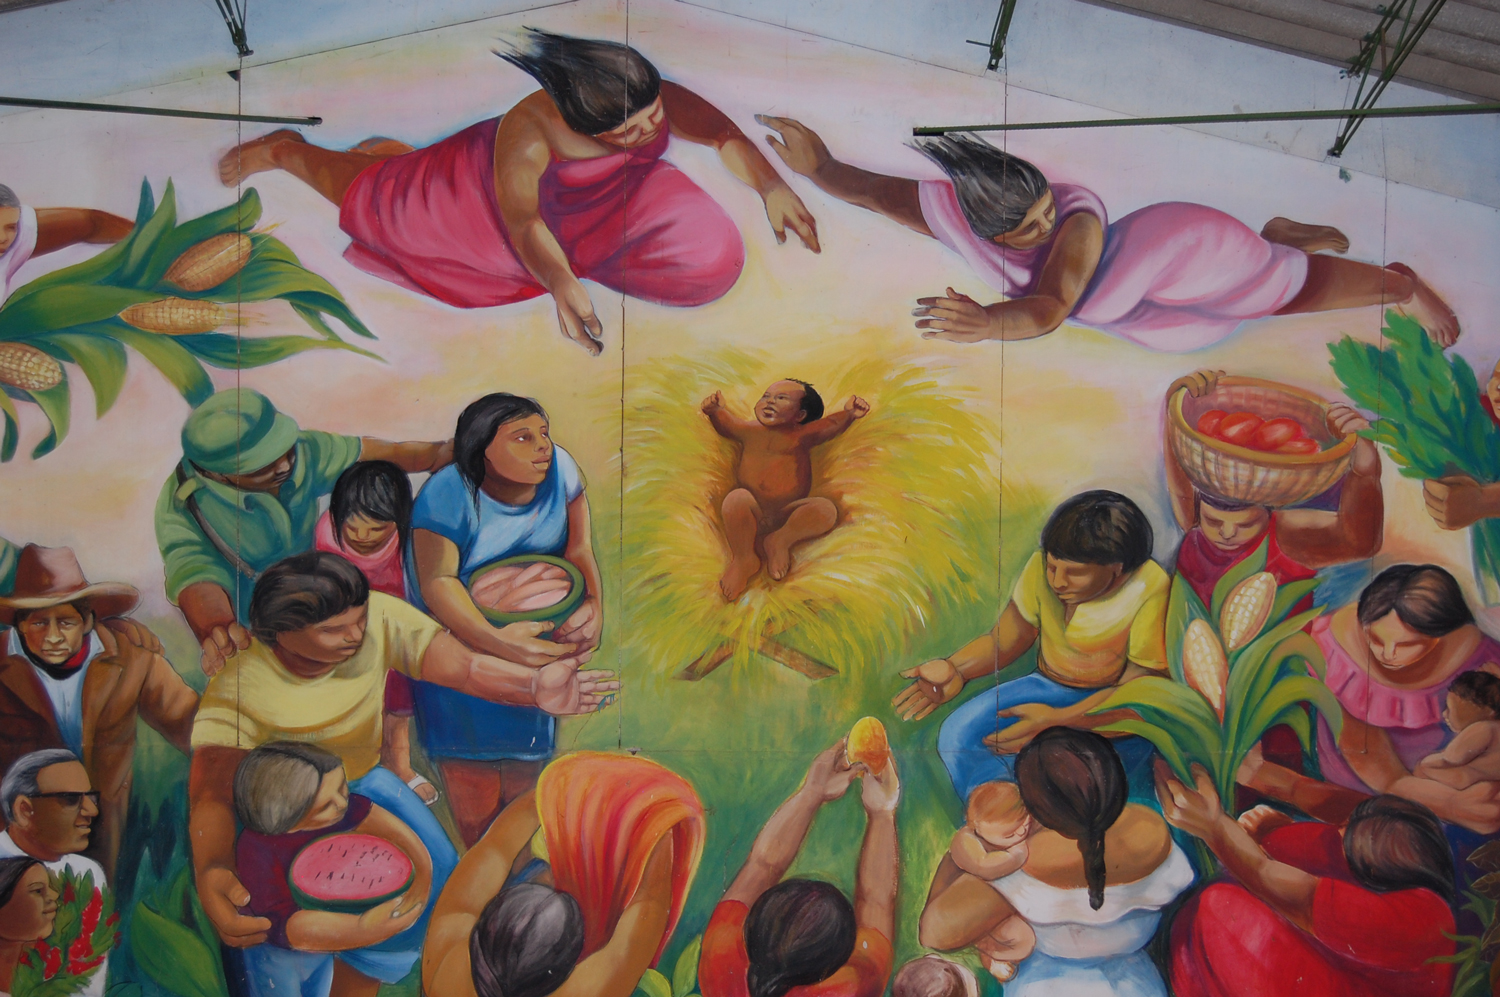 Community center in Managua